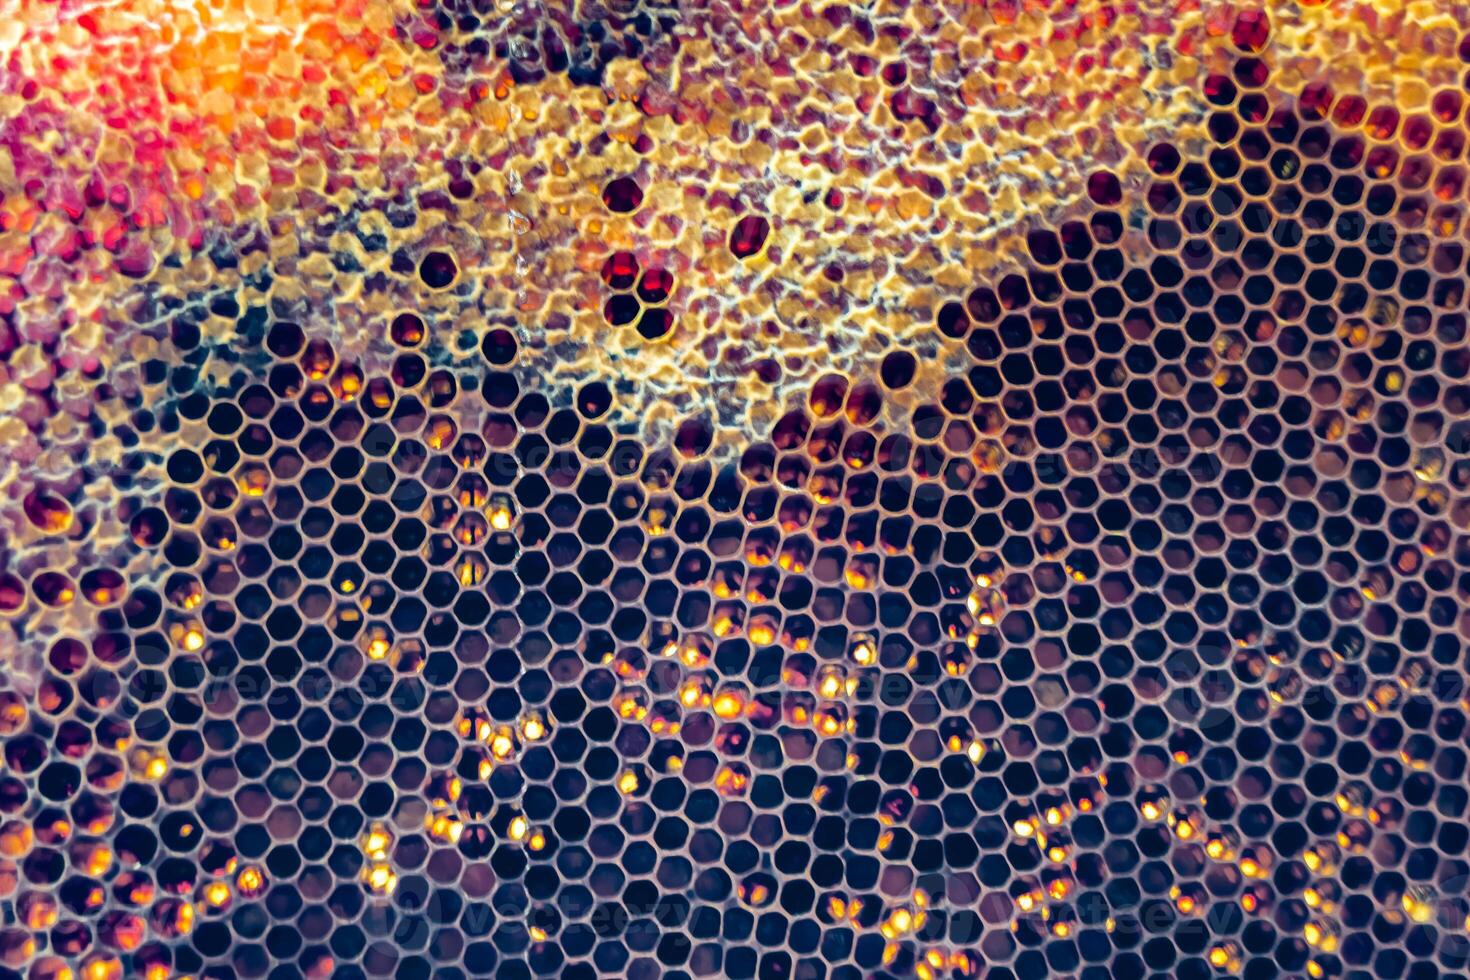 far cadere di ape miele gocciolare a partire dal esagonale favi pieno con d'oro nettare foto